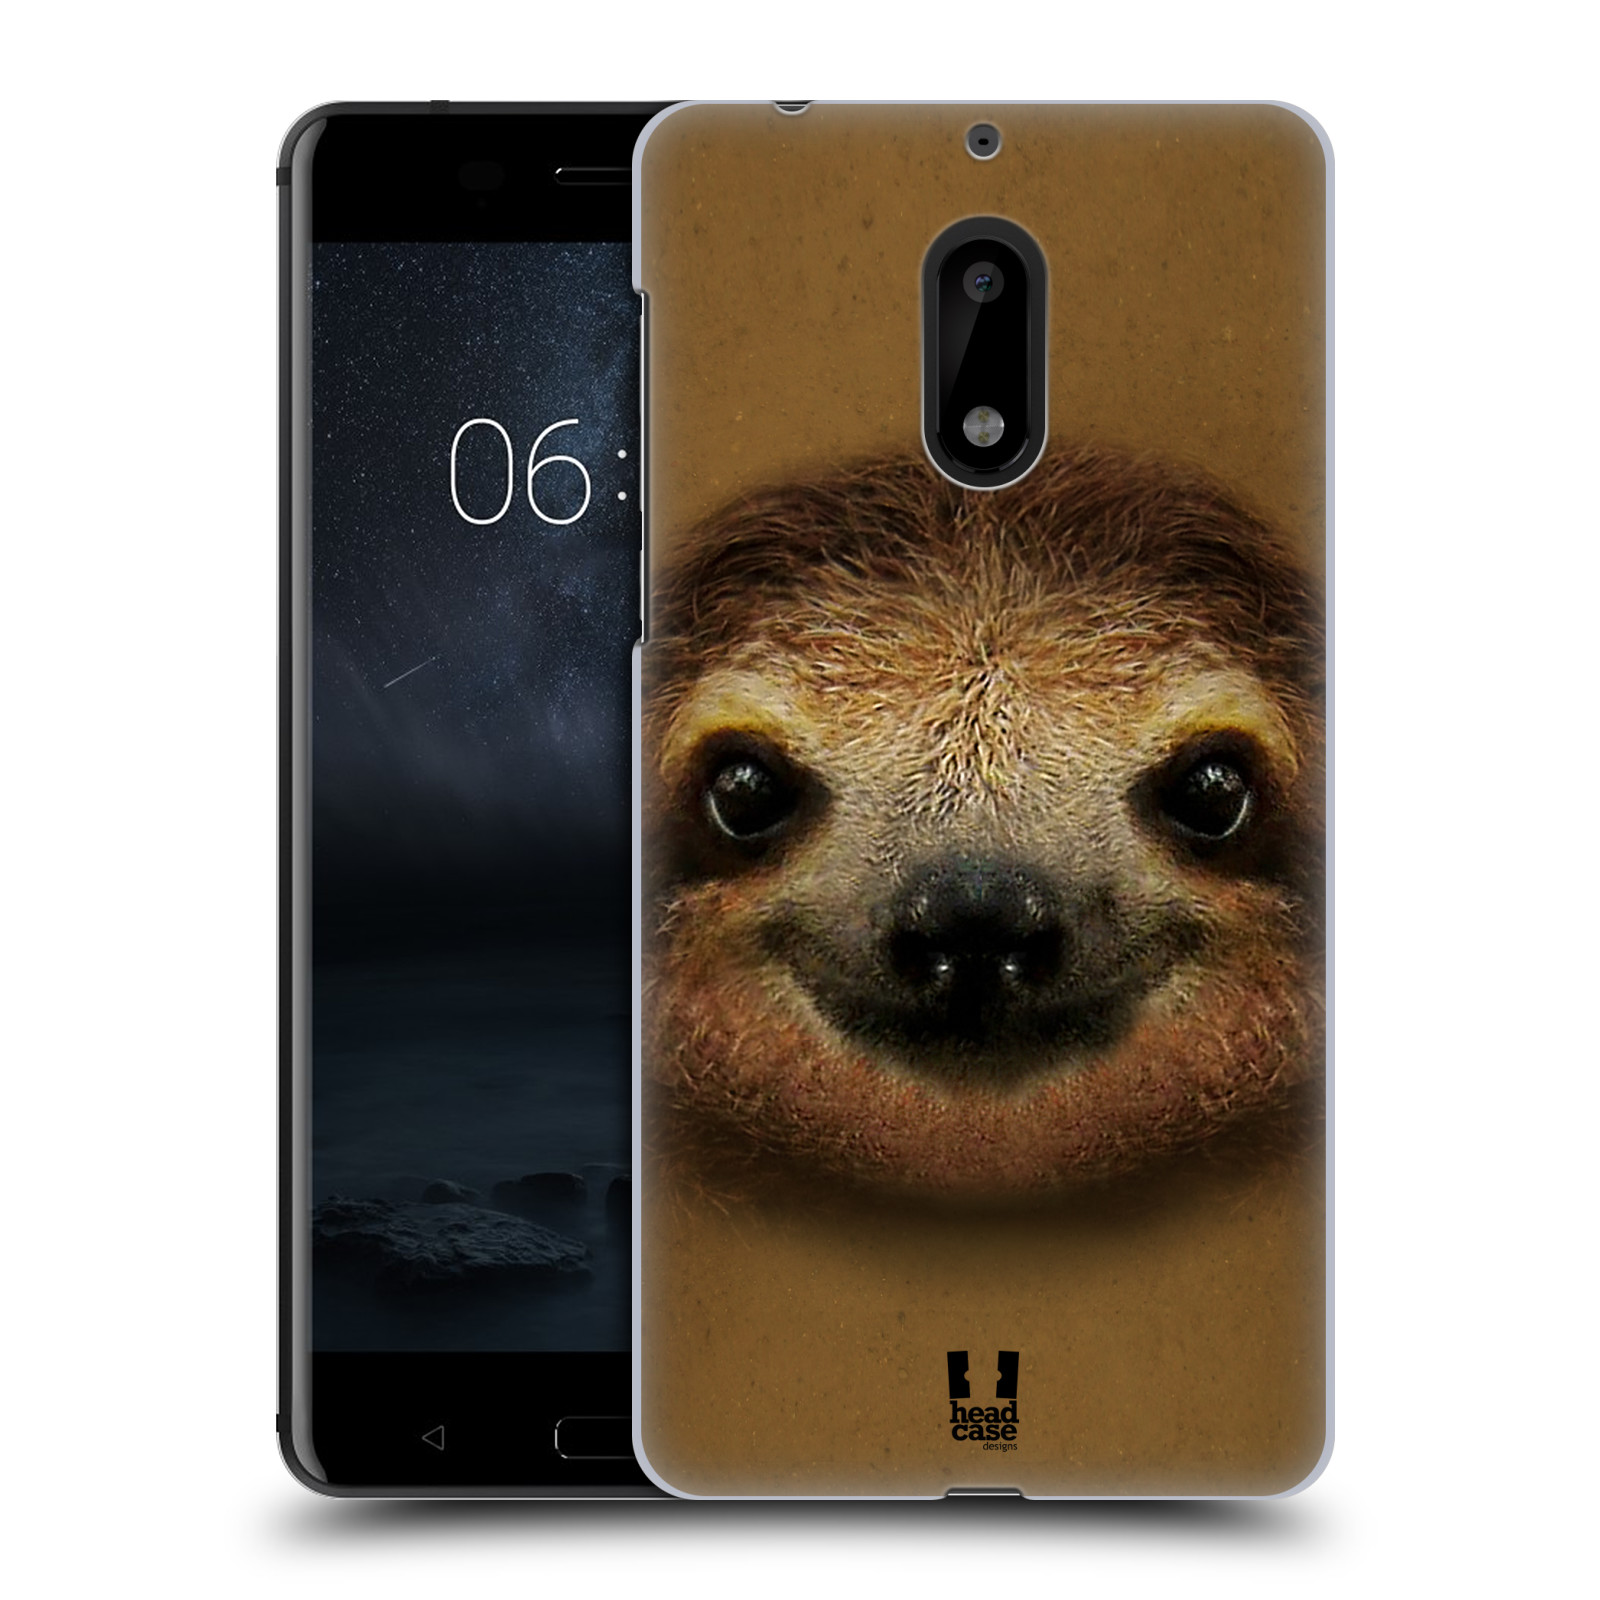 HEAD CASE plastový obal na mobil Nokia 6 vzor Zvířecí tváře 2 lenochod